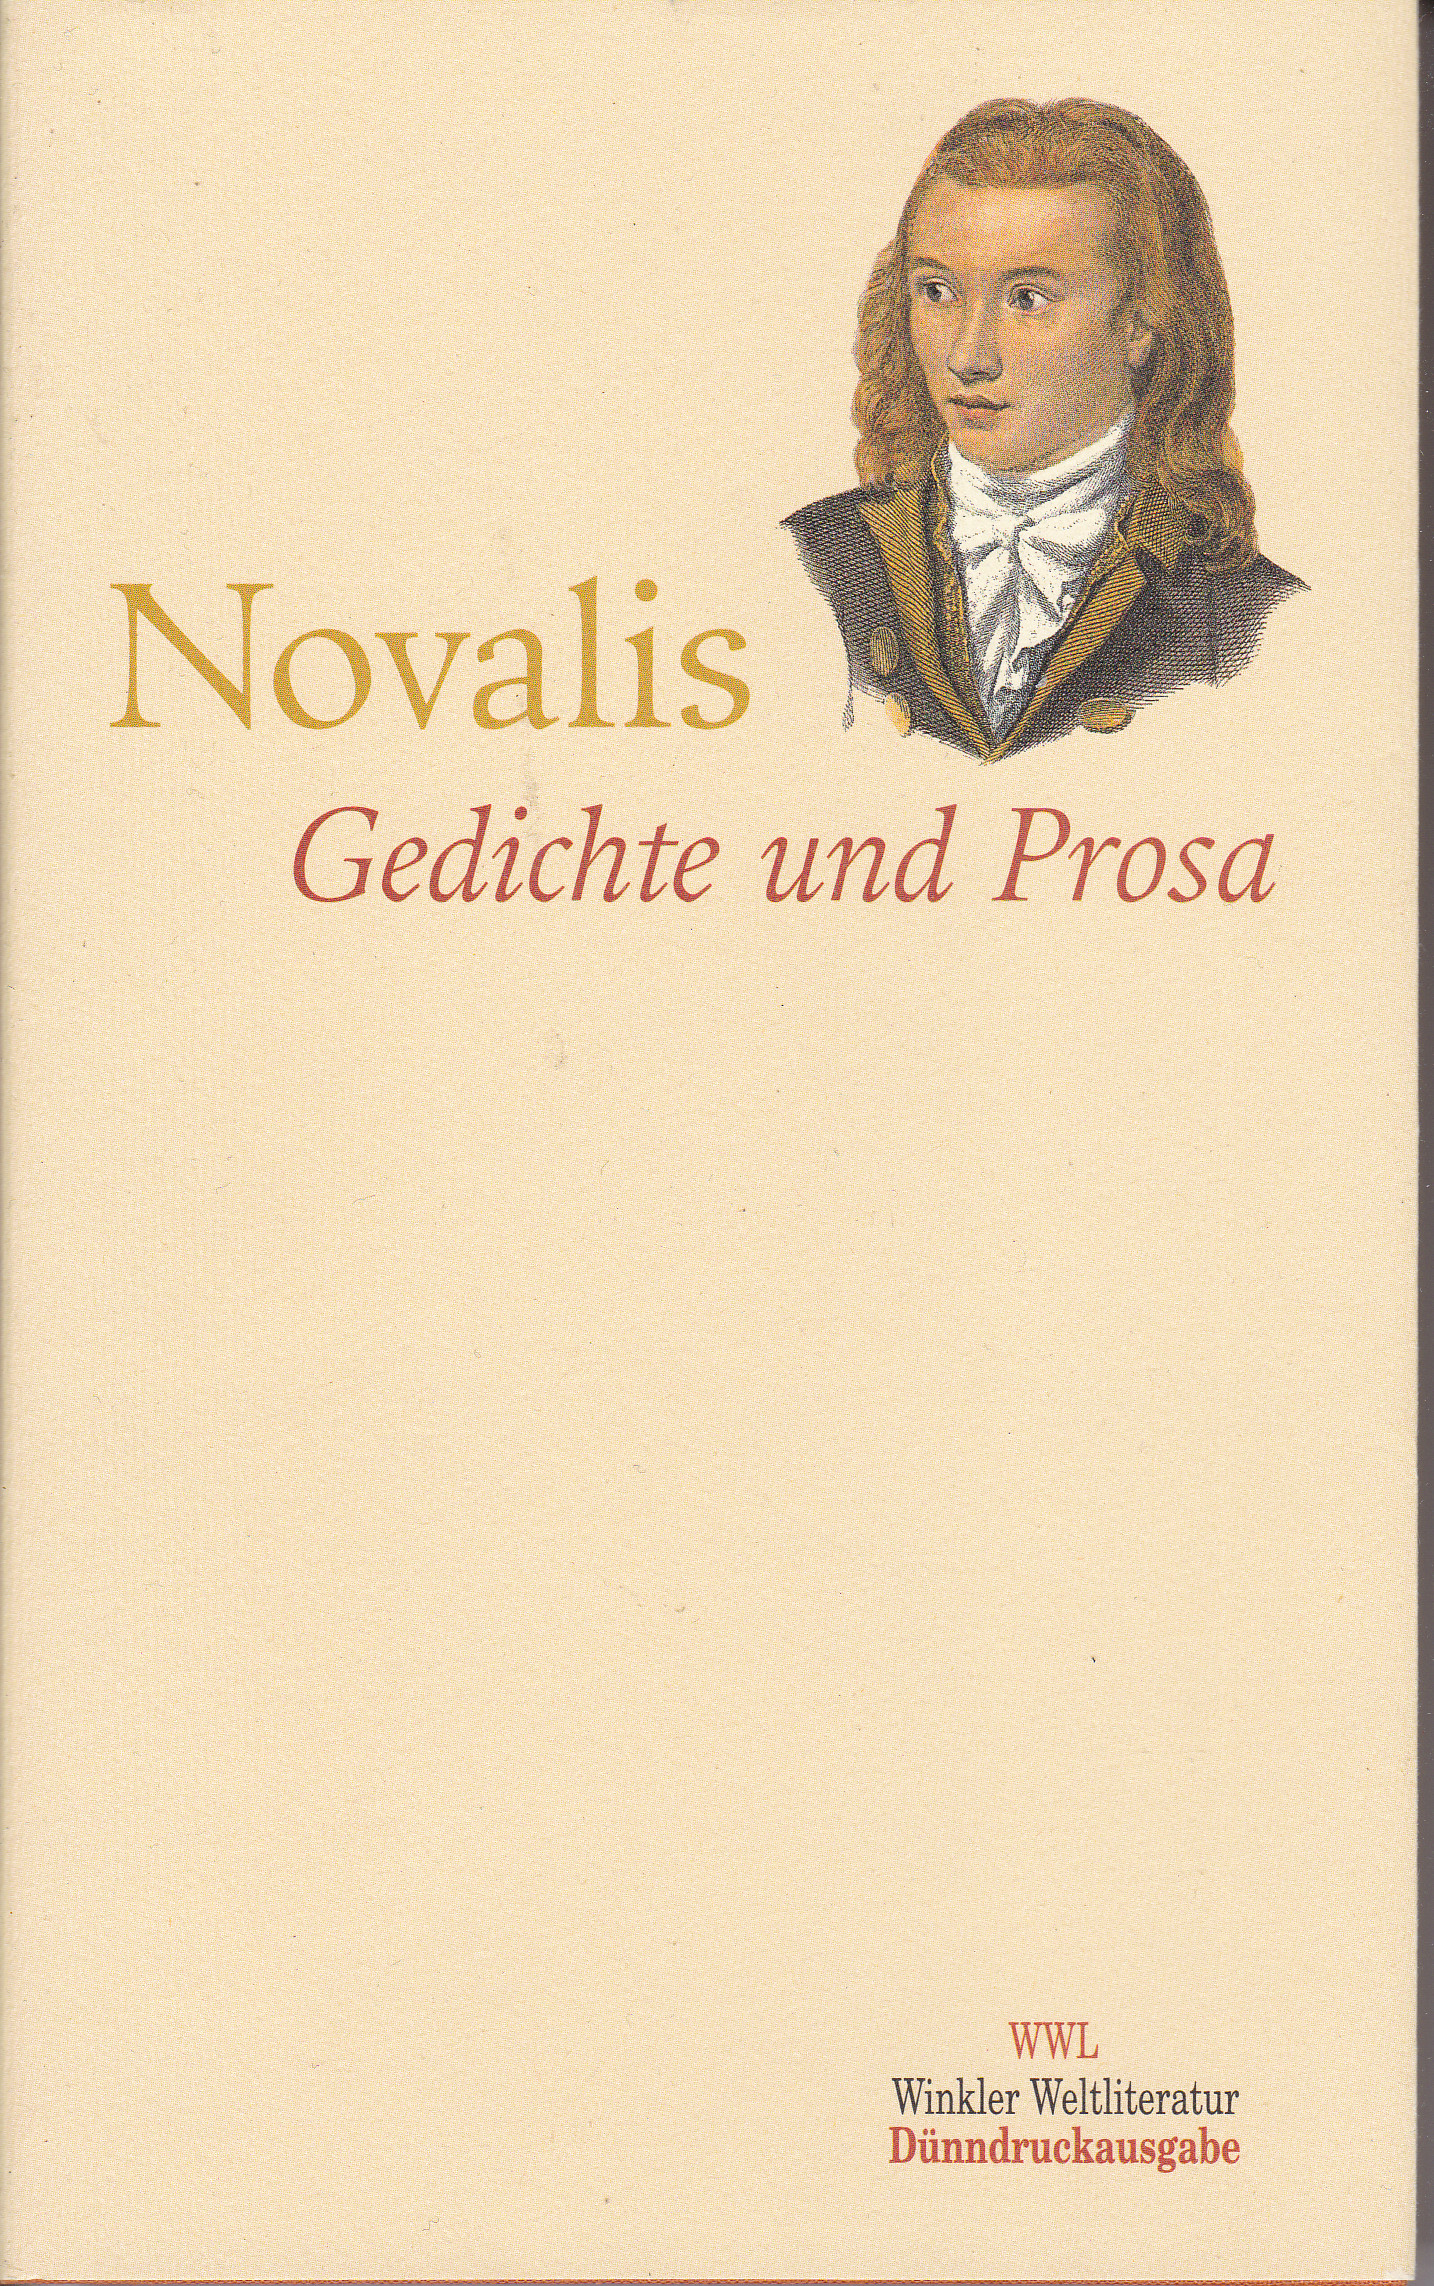 Gedichte und Prosa - Novalis (Friedrich von Hardenberg